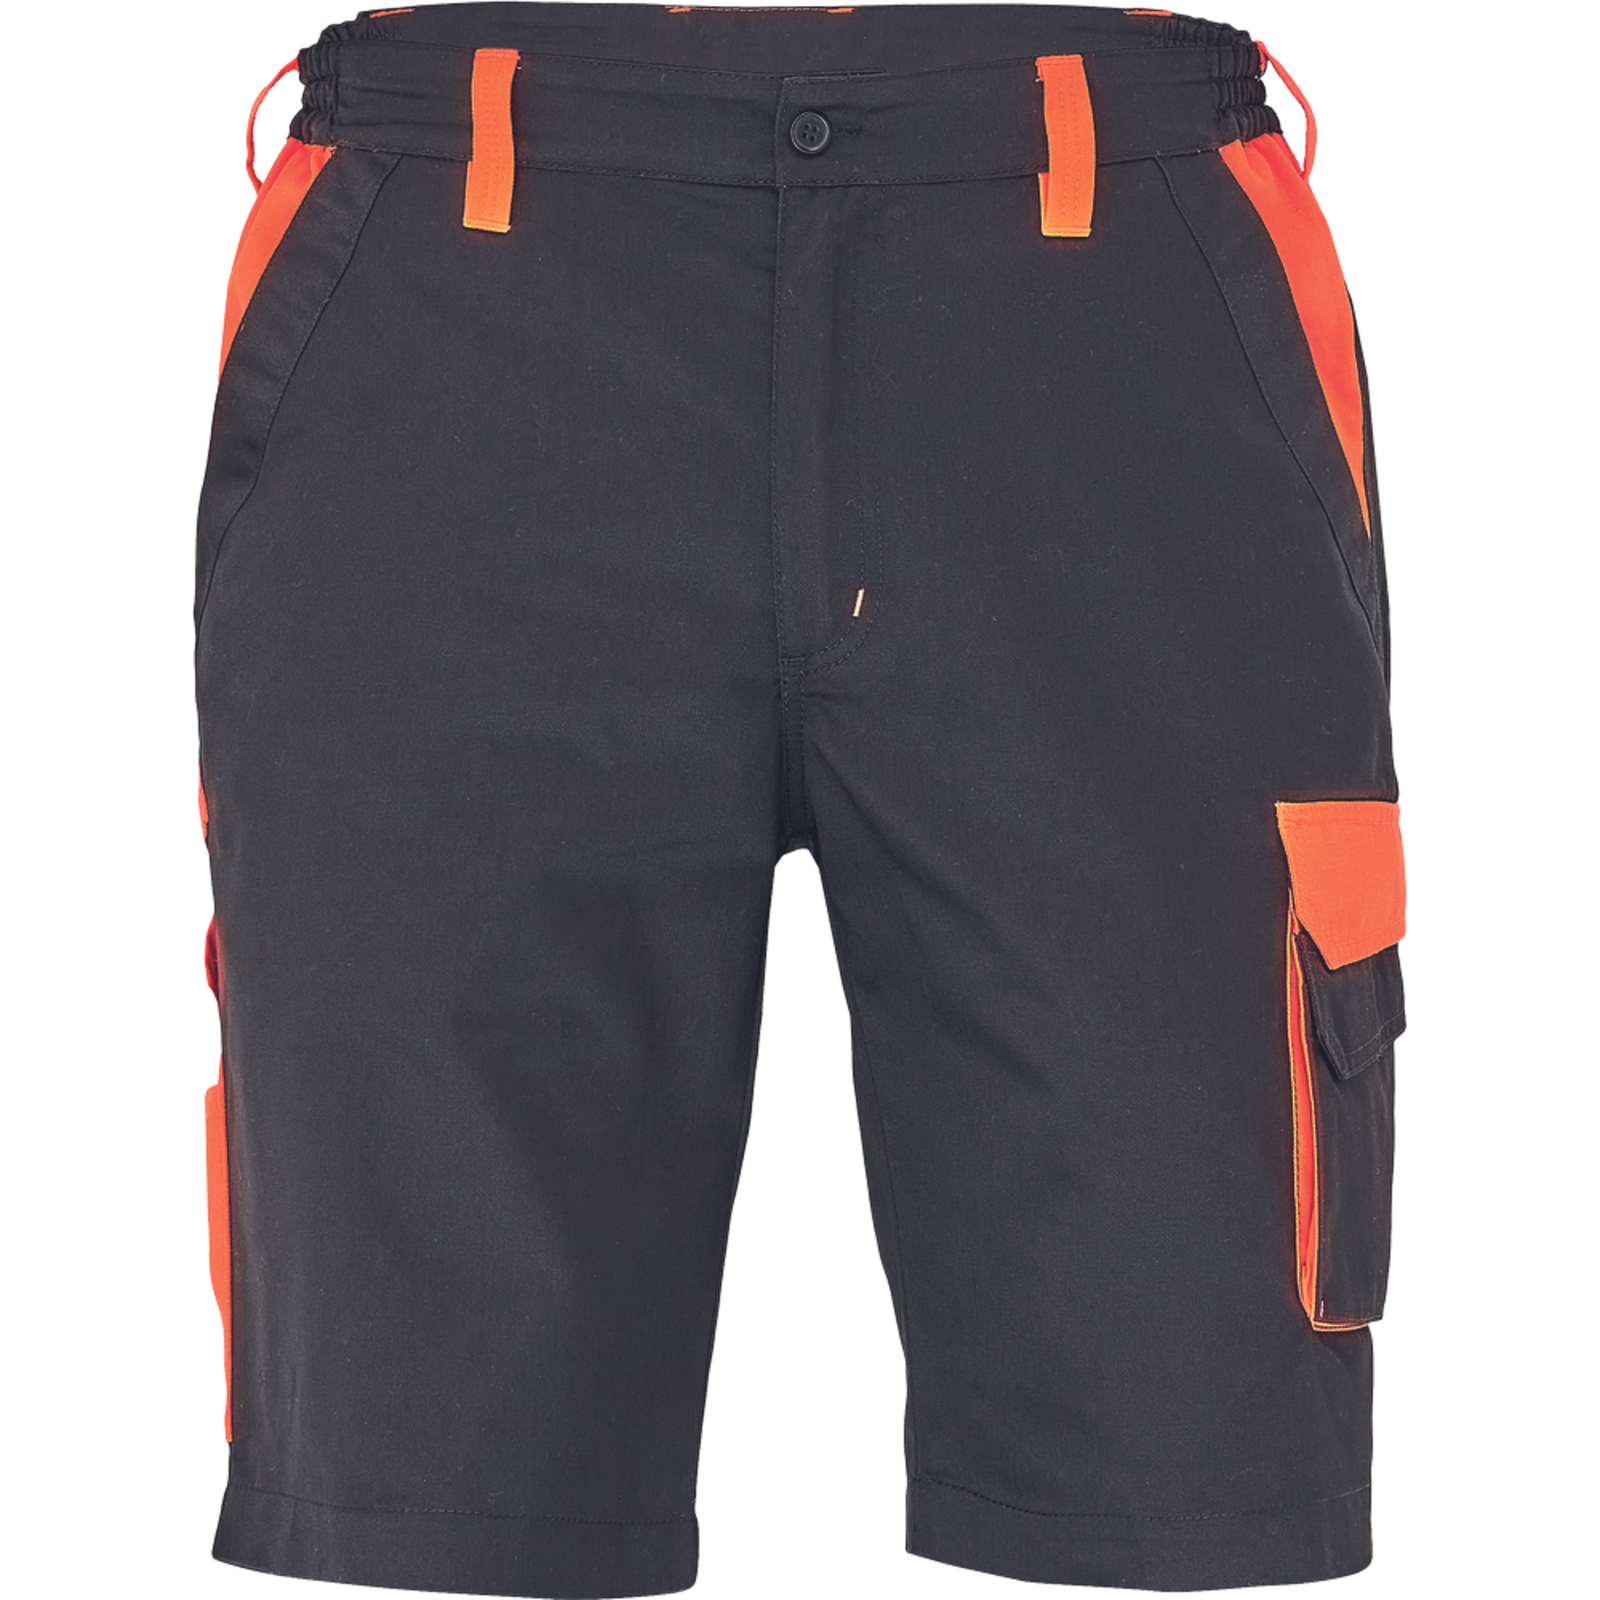 Pánske šortky Cerva Max Vivo - veľkosť: 46, farba: čierna/oranžová